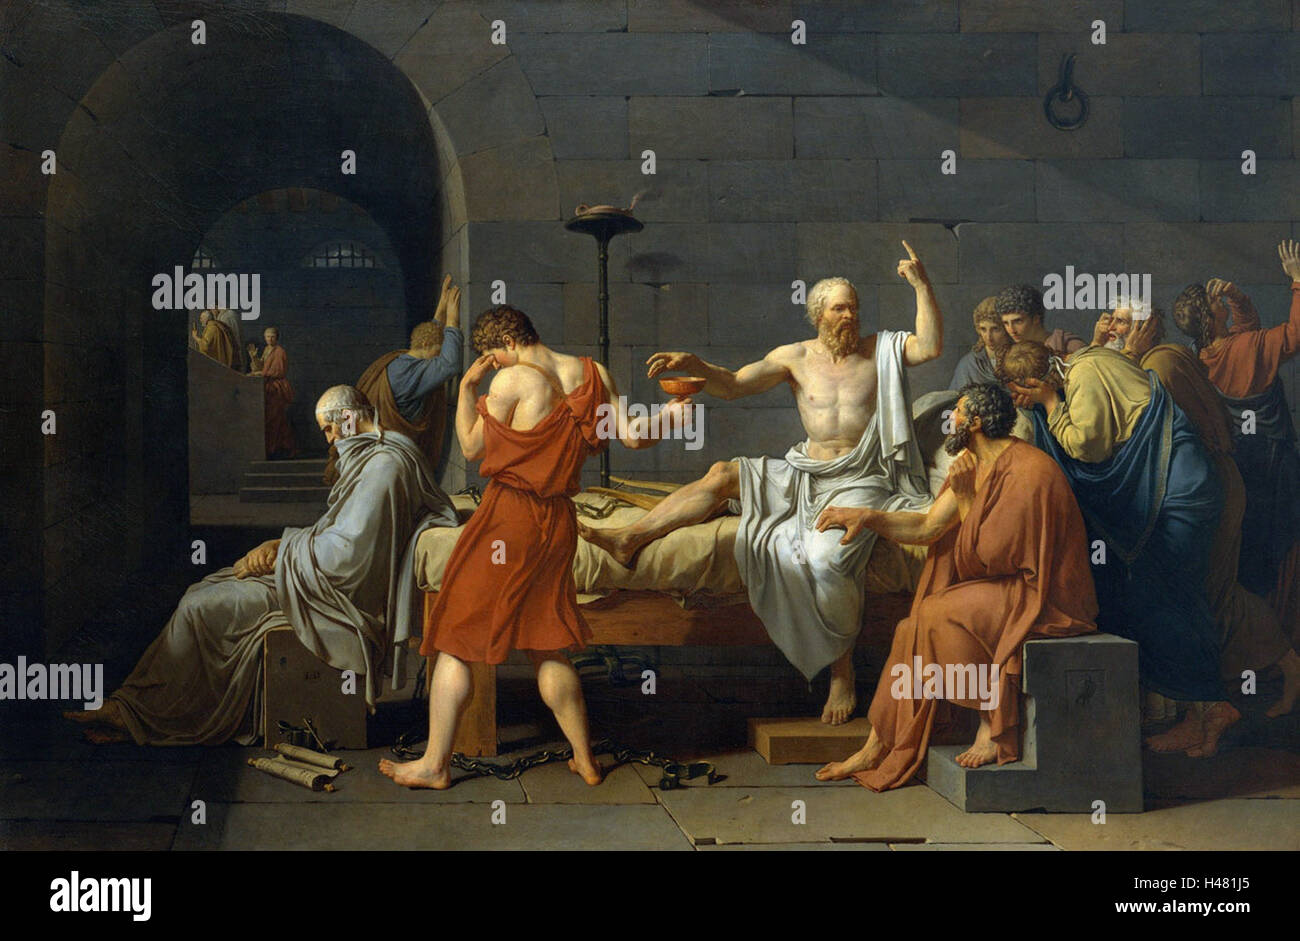 Jacques david-la Death de SOCRATES vintage son impresiones artísticas